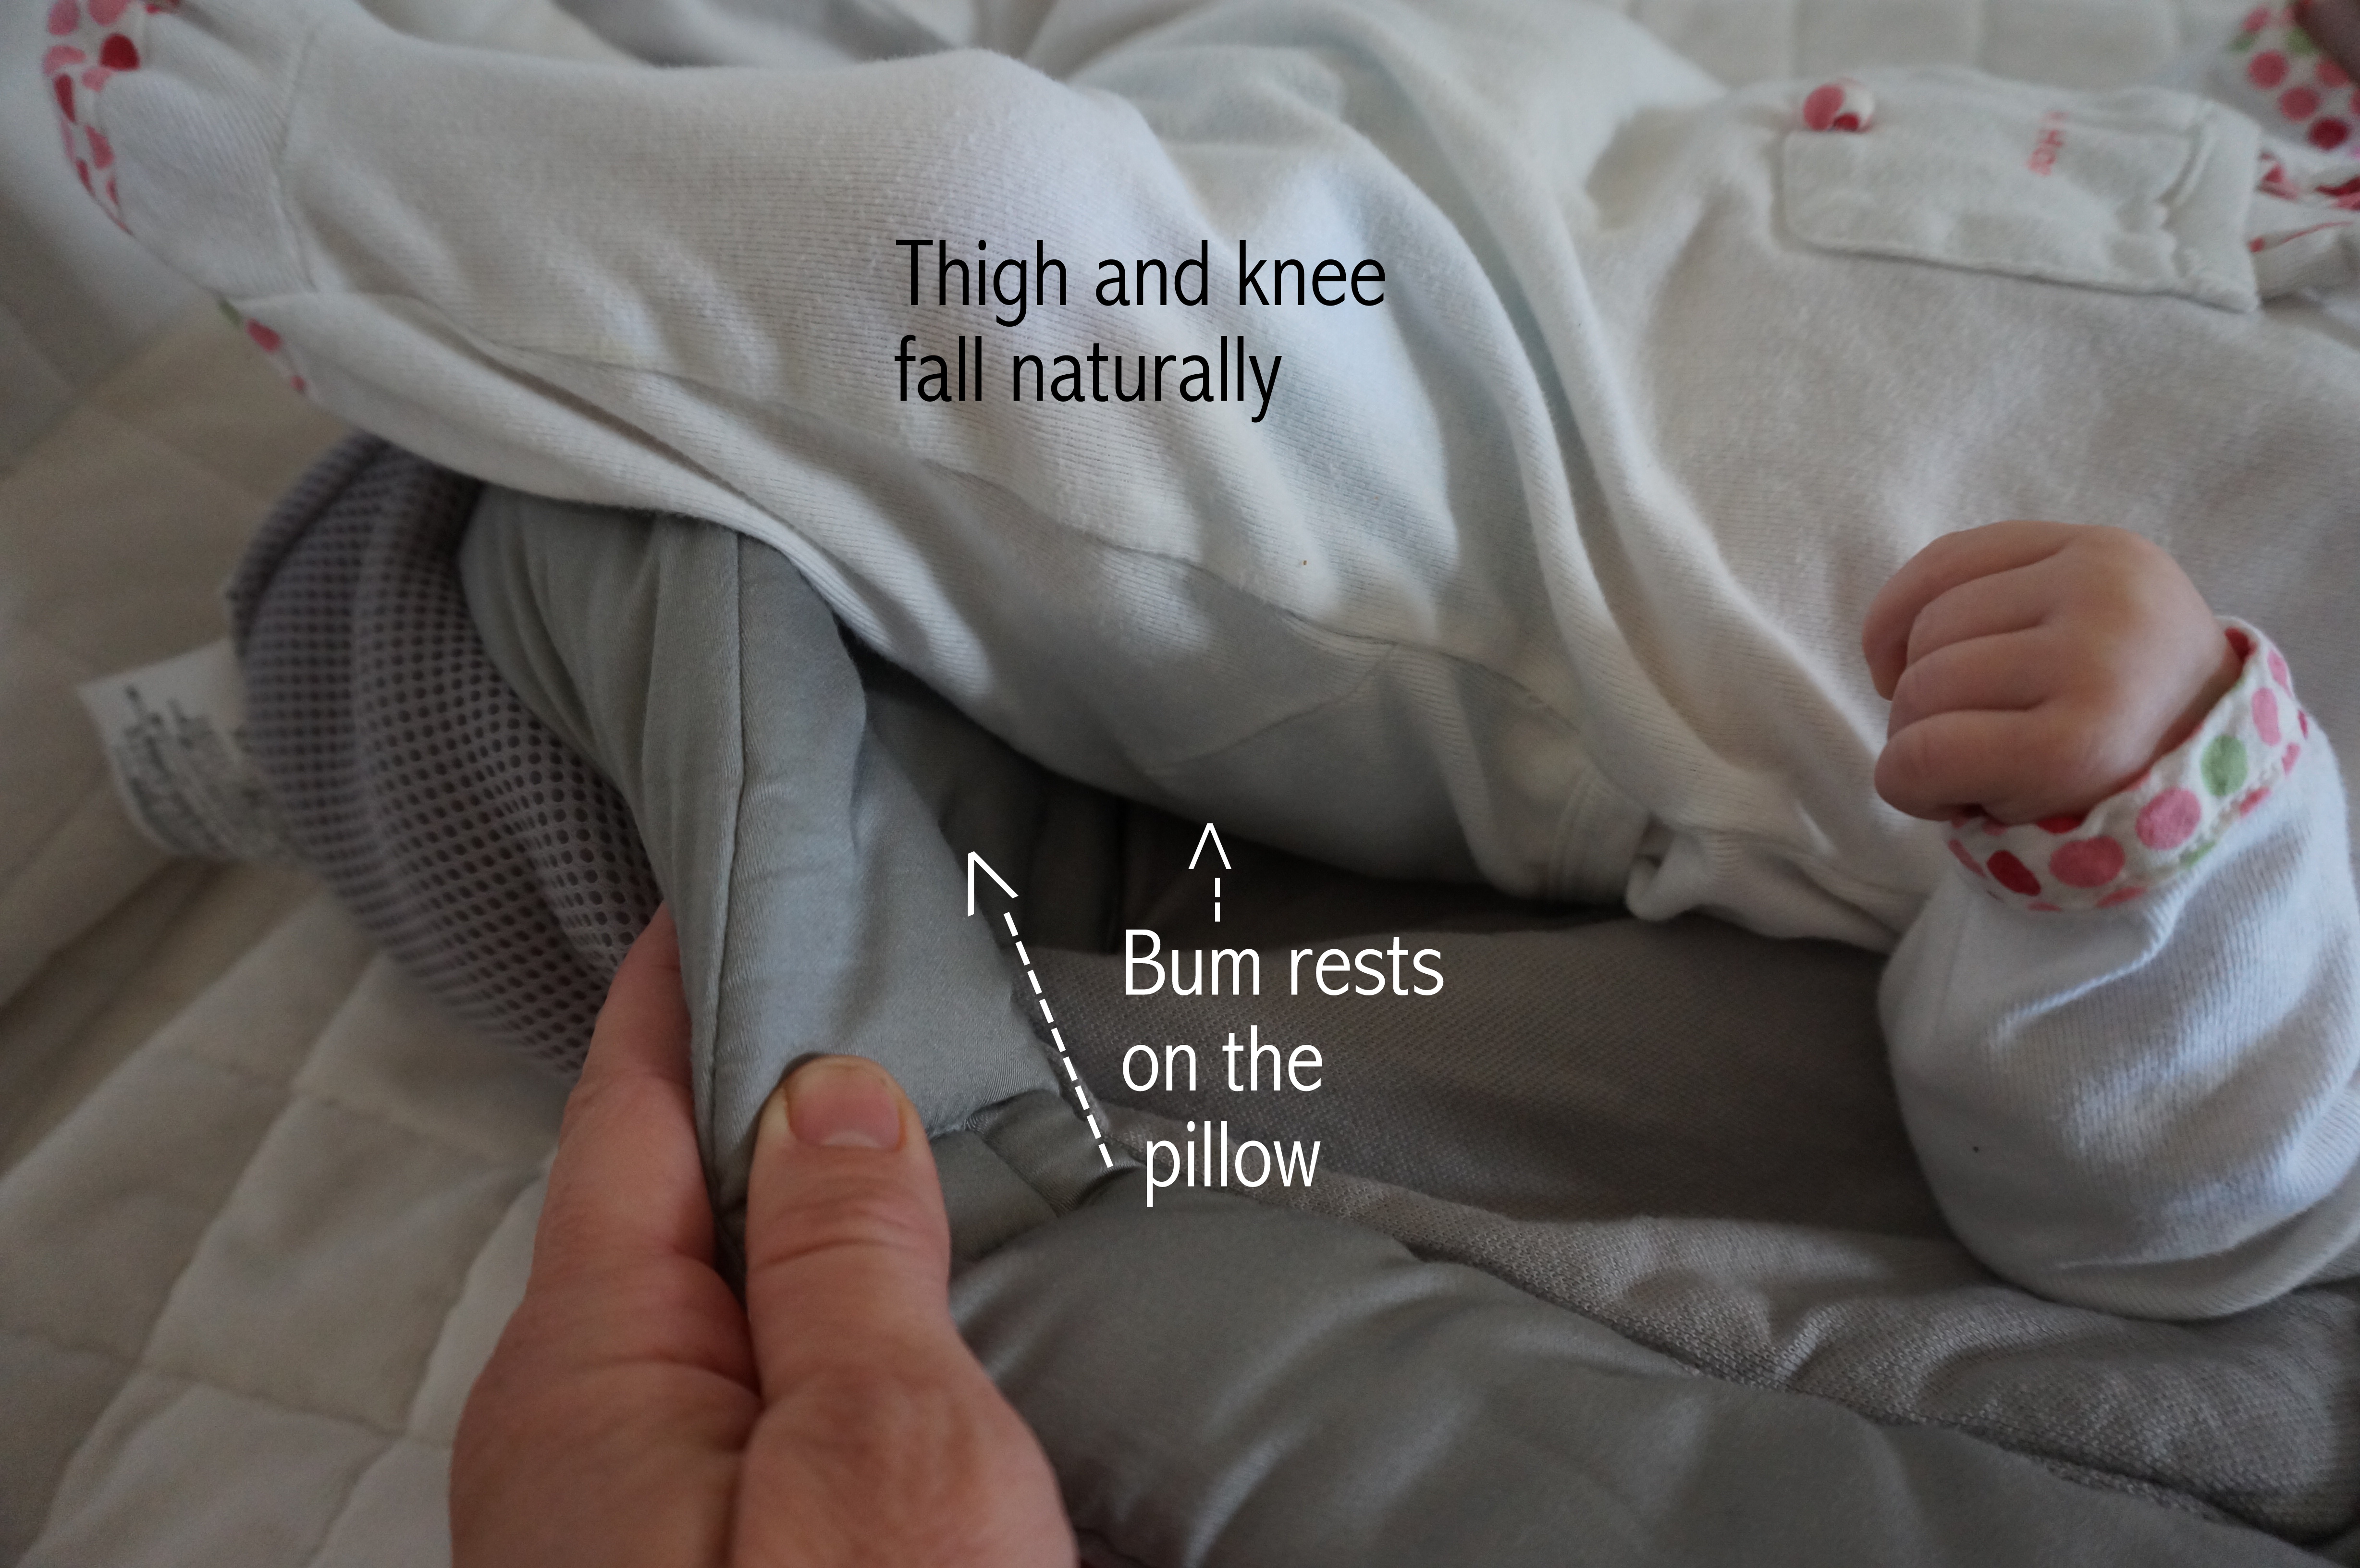 ergobaby infant insert legs